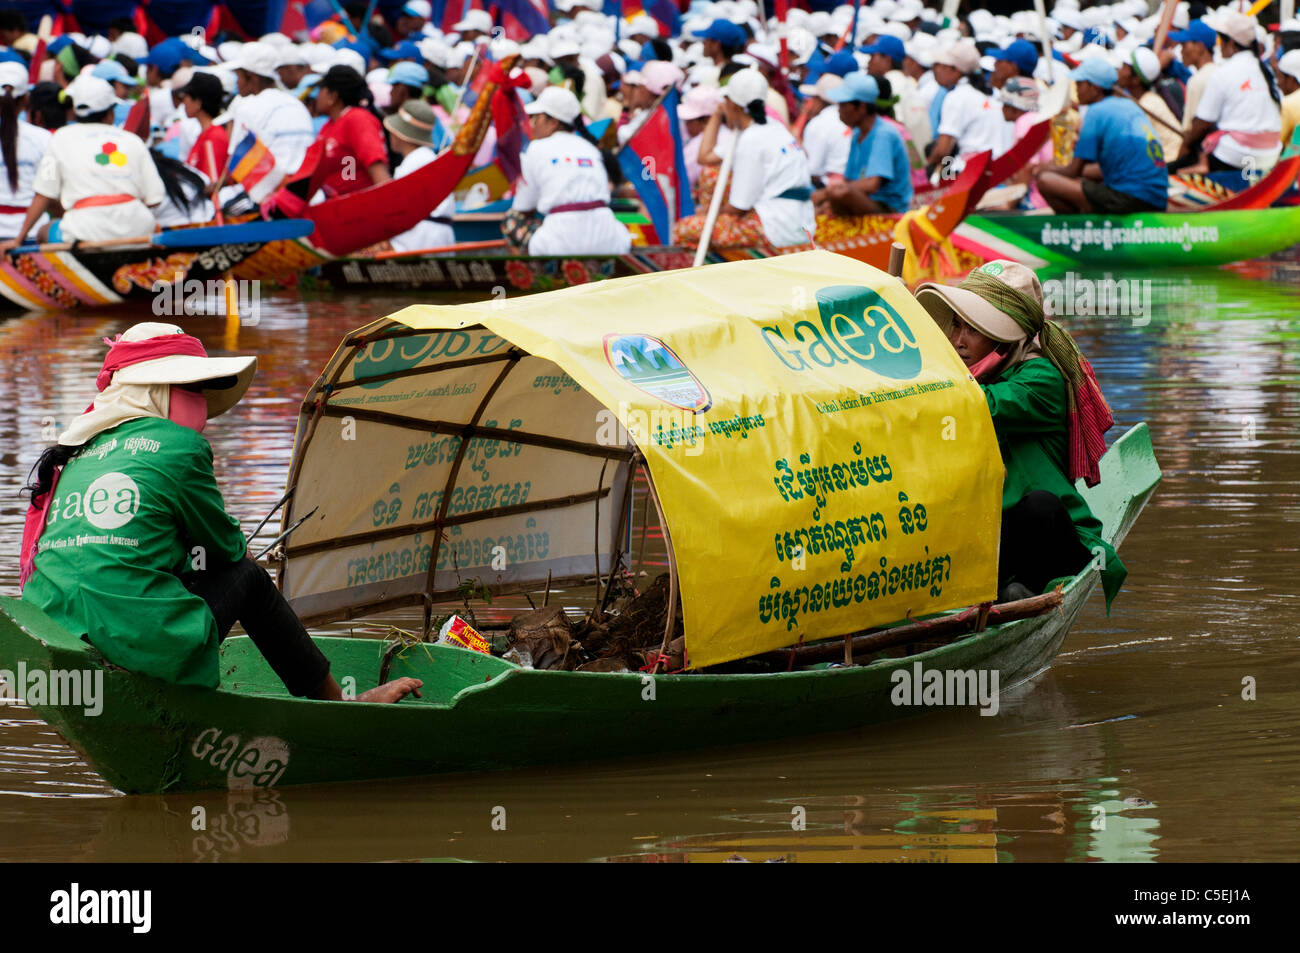 L'Action mondiale pour la prise de conscience environnementale (GAEA) bateau à l'enlèvement des ordures 2010 Fête de l'eau, Siem Reap, Cambodge Banque D'Images